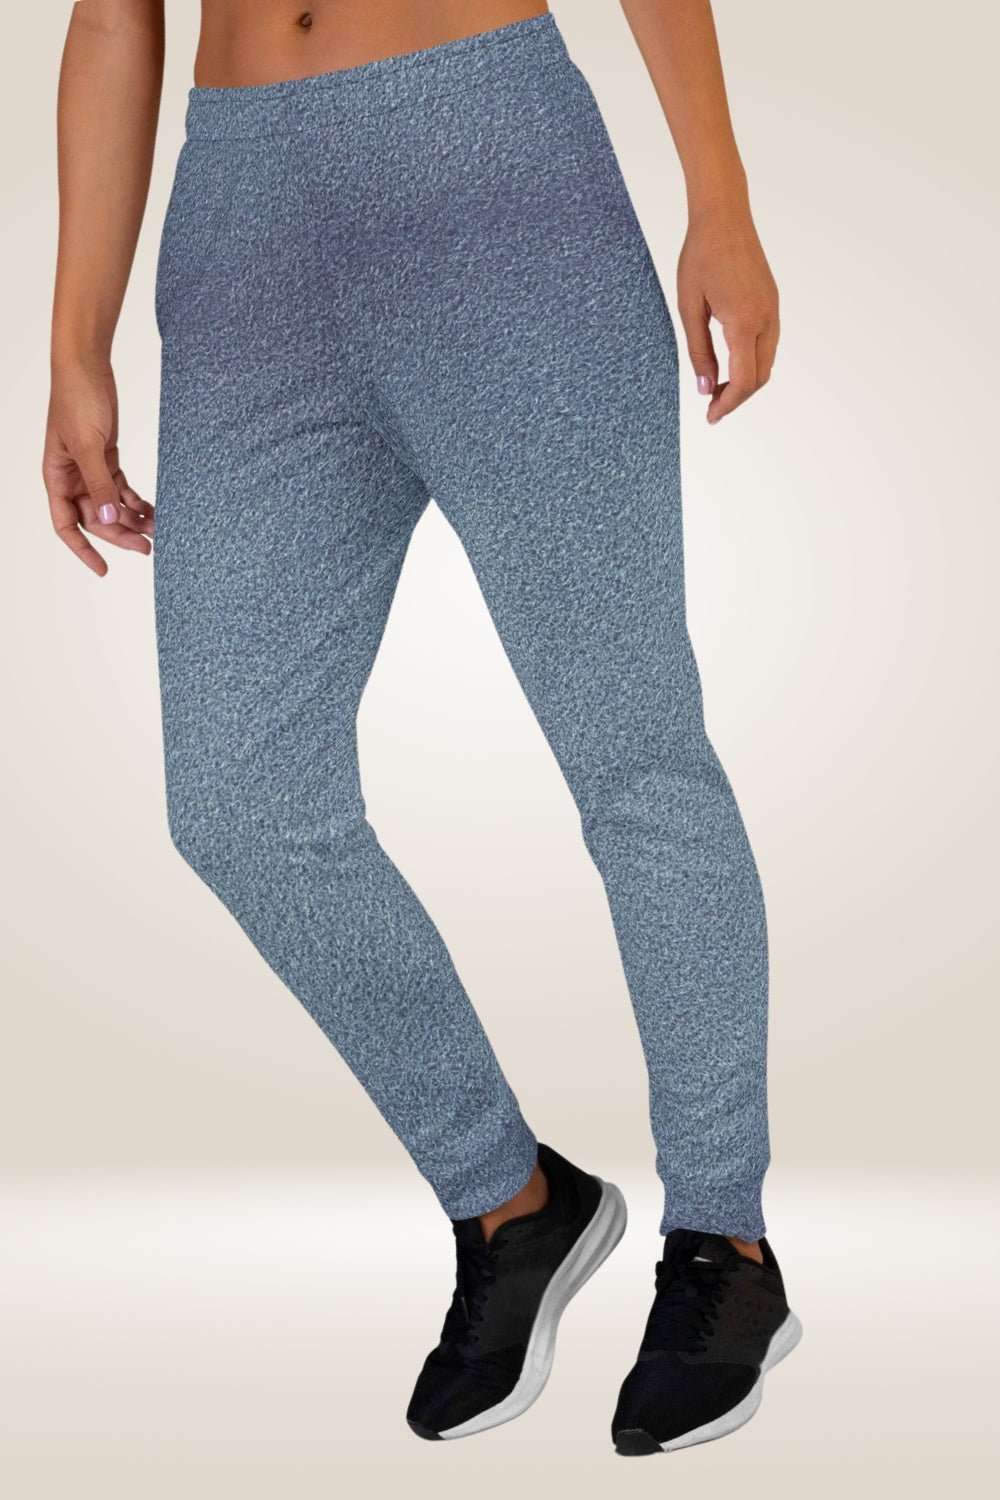 Blue Slim Fit sweatpants Joggers - TGC Boutique - Joggers